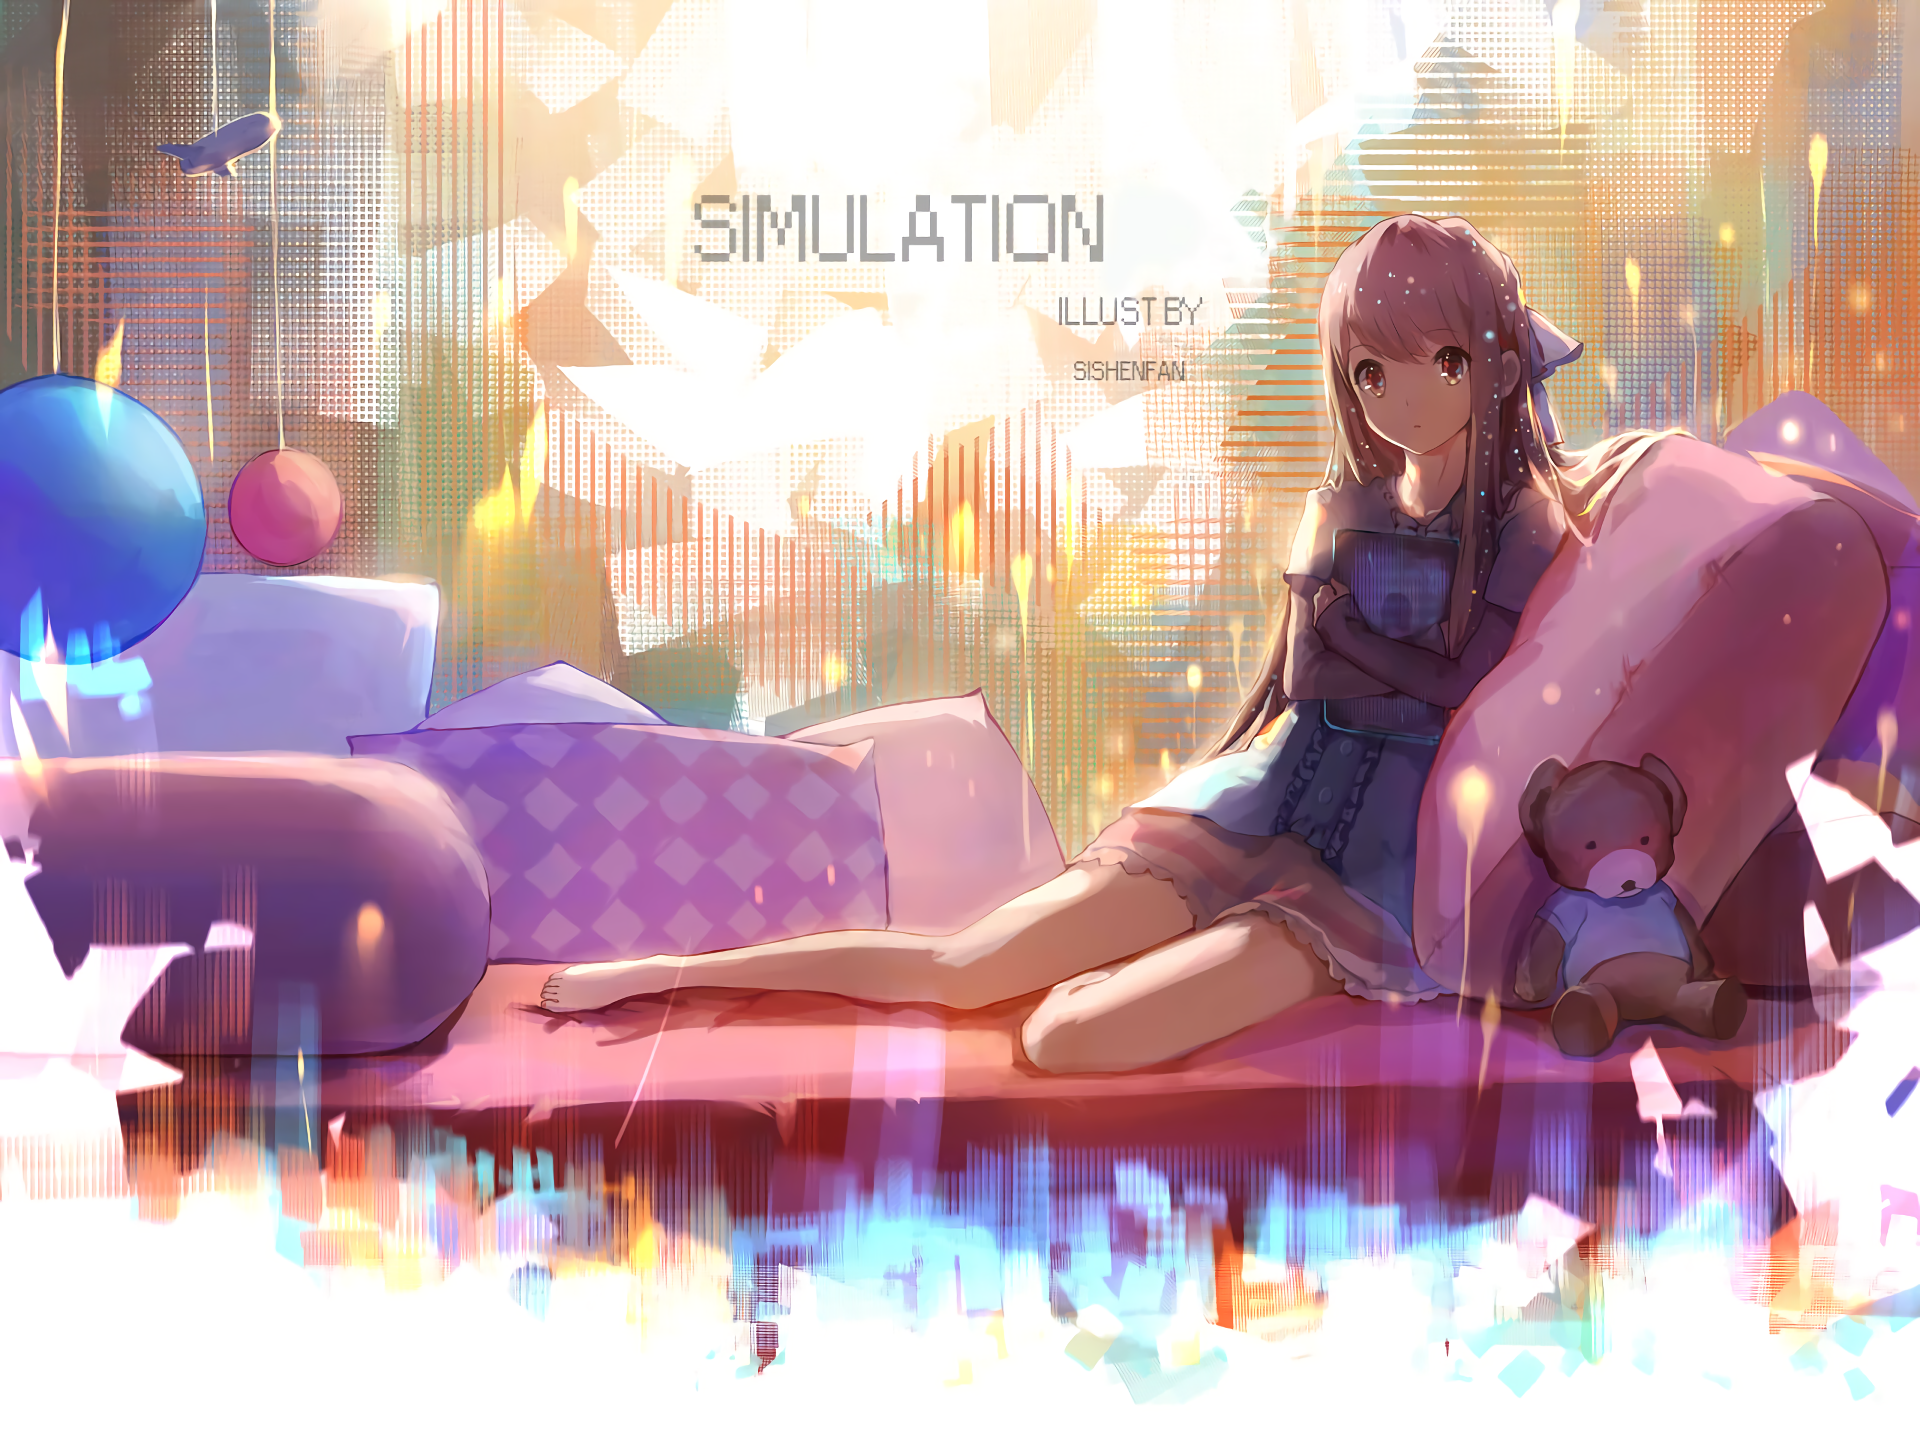 Anime Shelter HD Wallpaper by Sishenfan